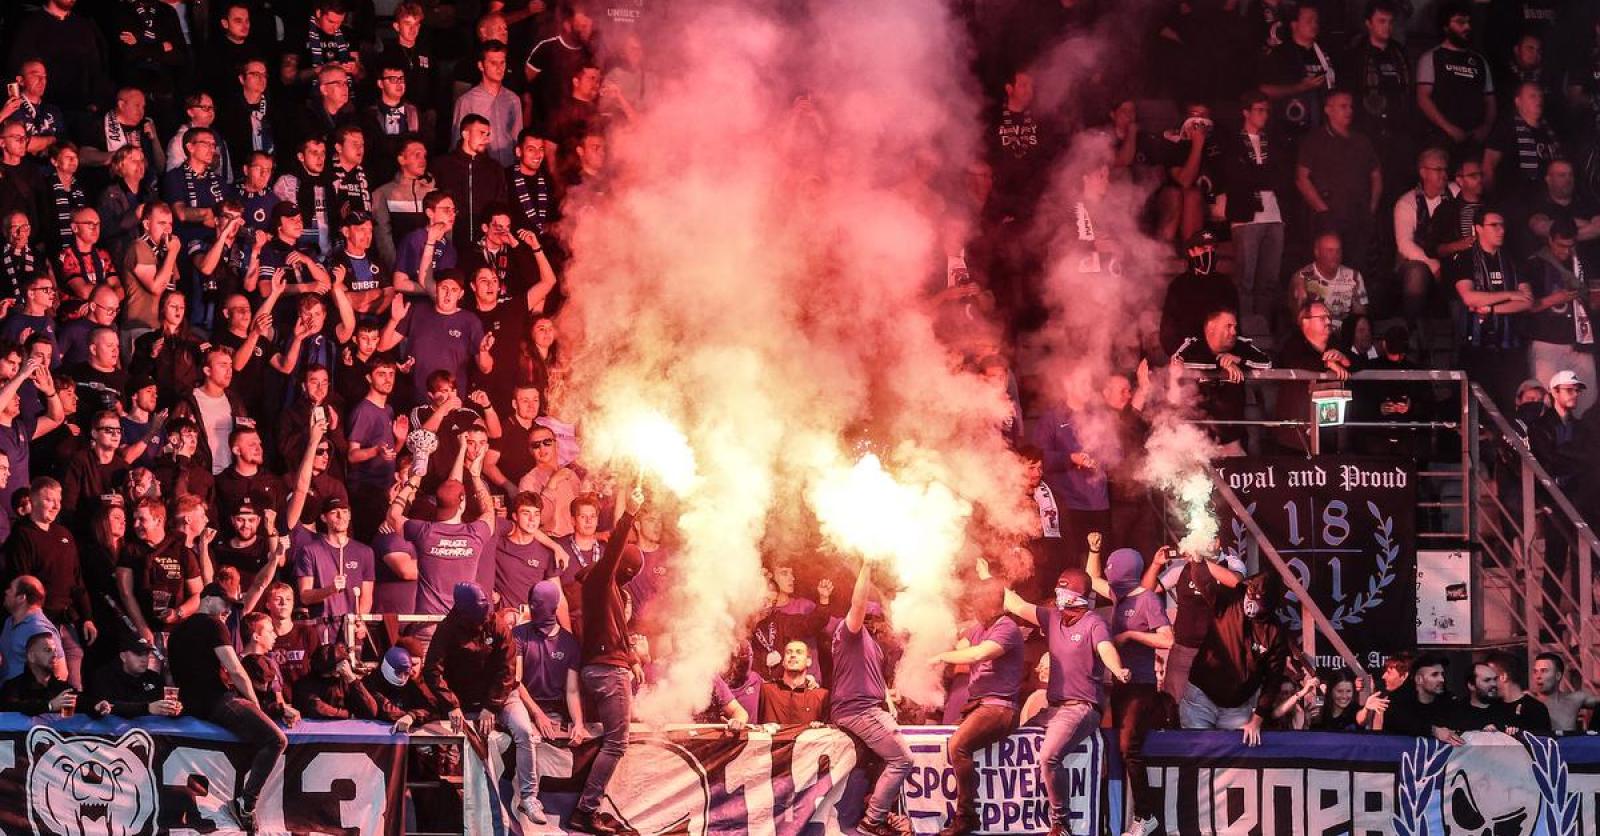 18-jarige Club Brugge-fan is in Denemarken veroordeeld tot vijf